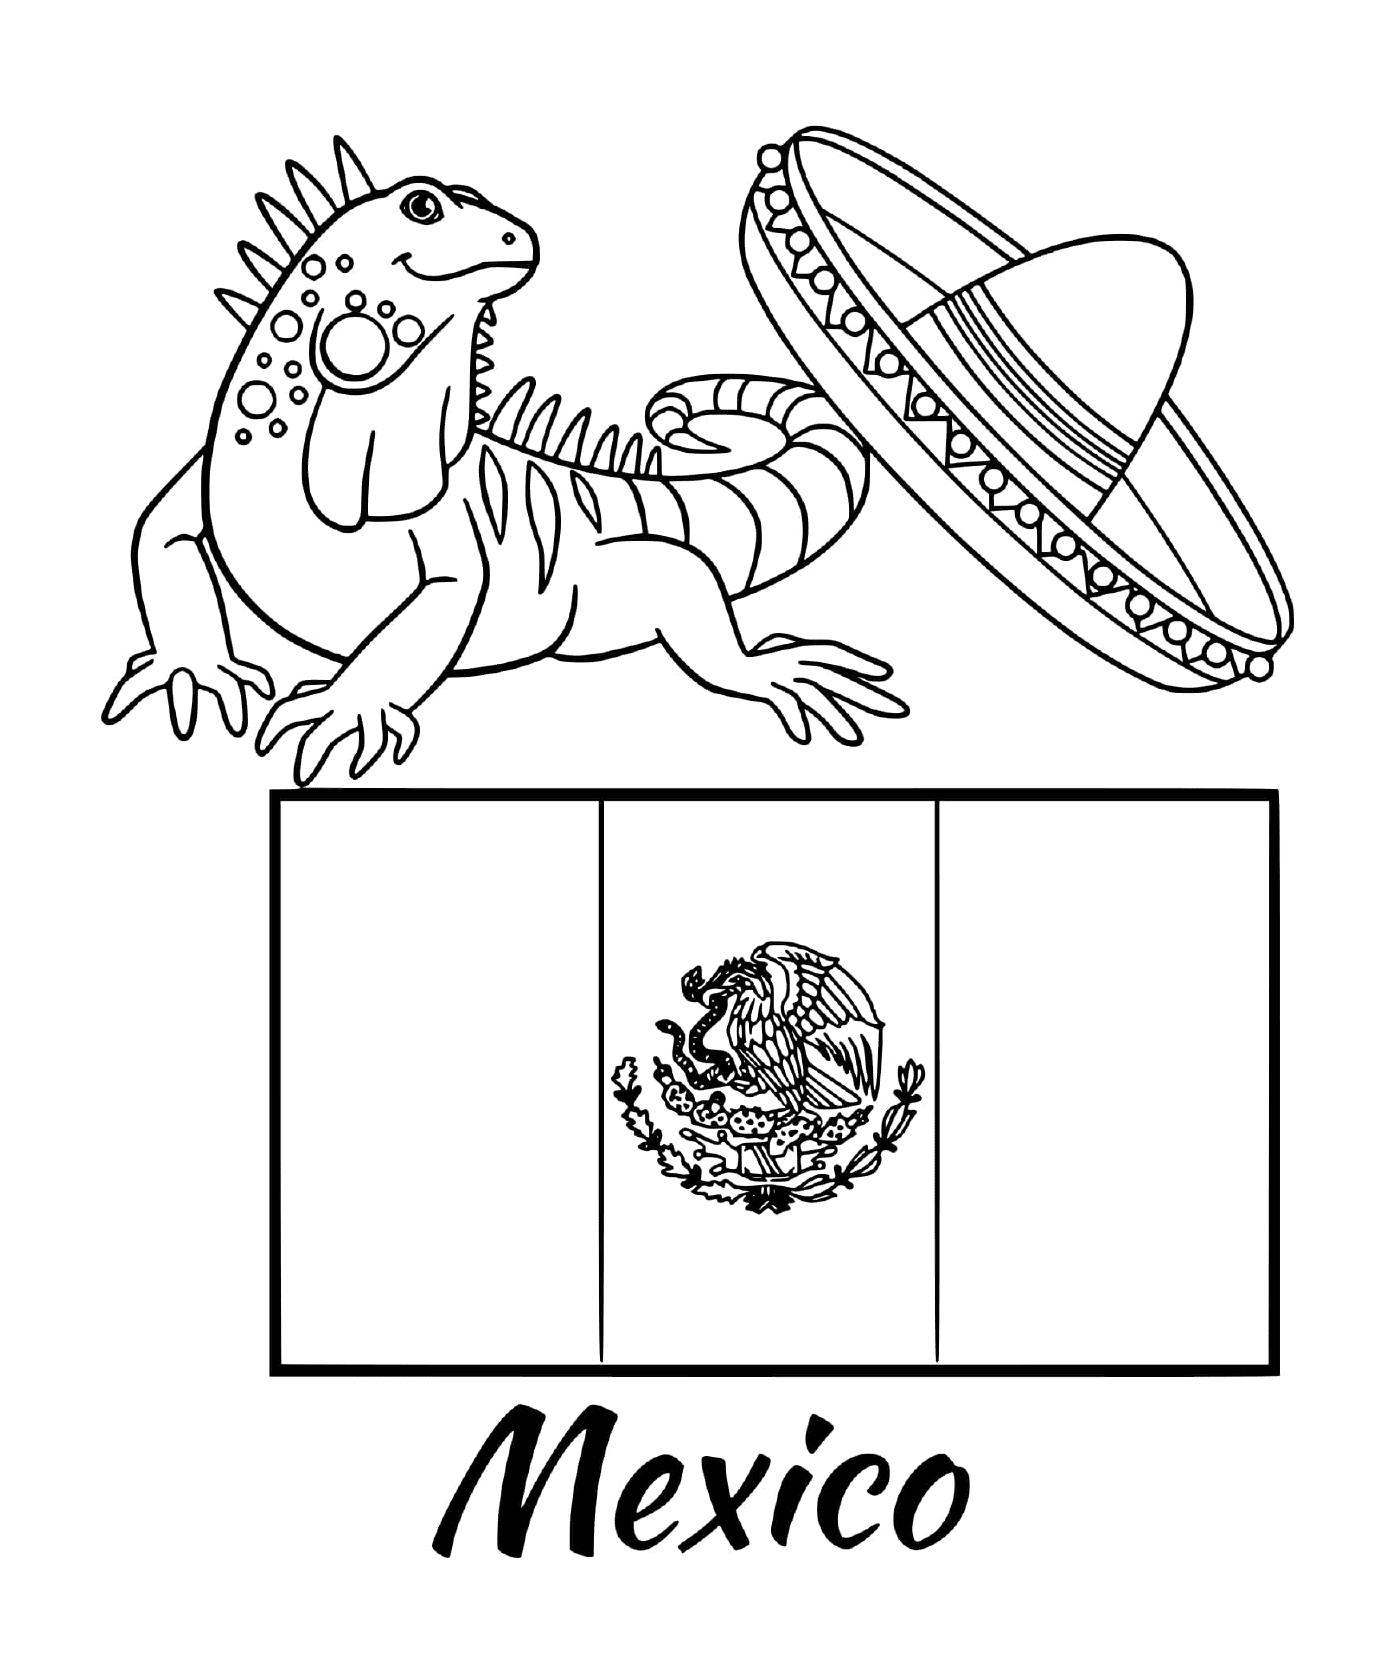  Bandeira do México com uma iguana 